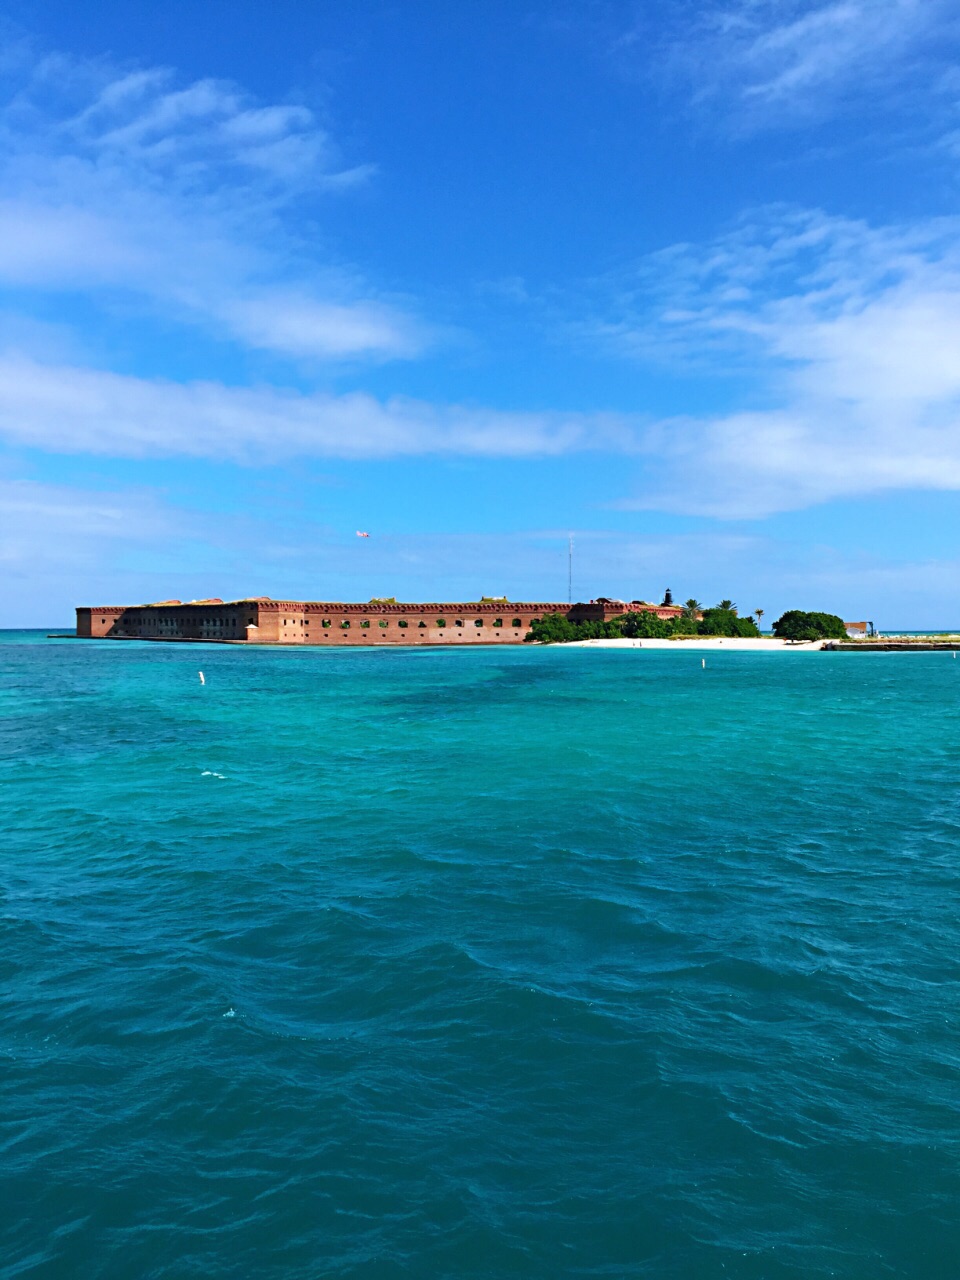 漂浮在墨西哥湾的砌石城堡——杰斐逊堡垒